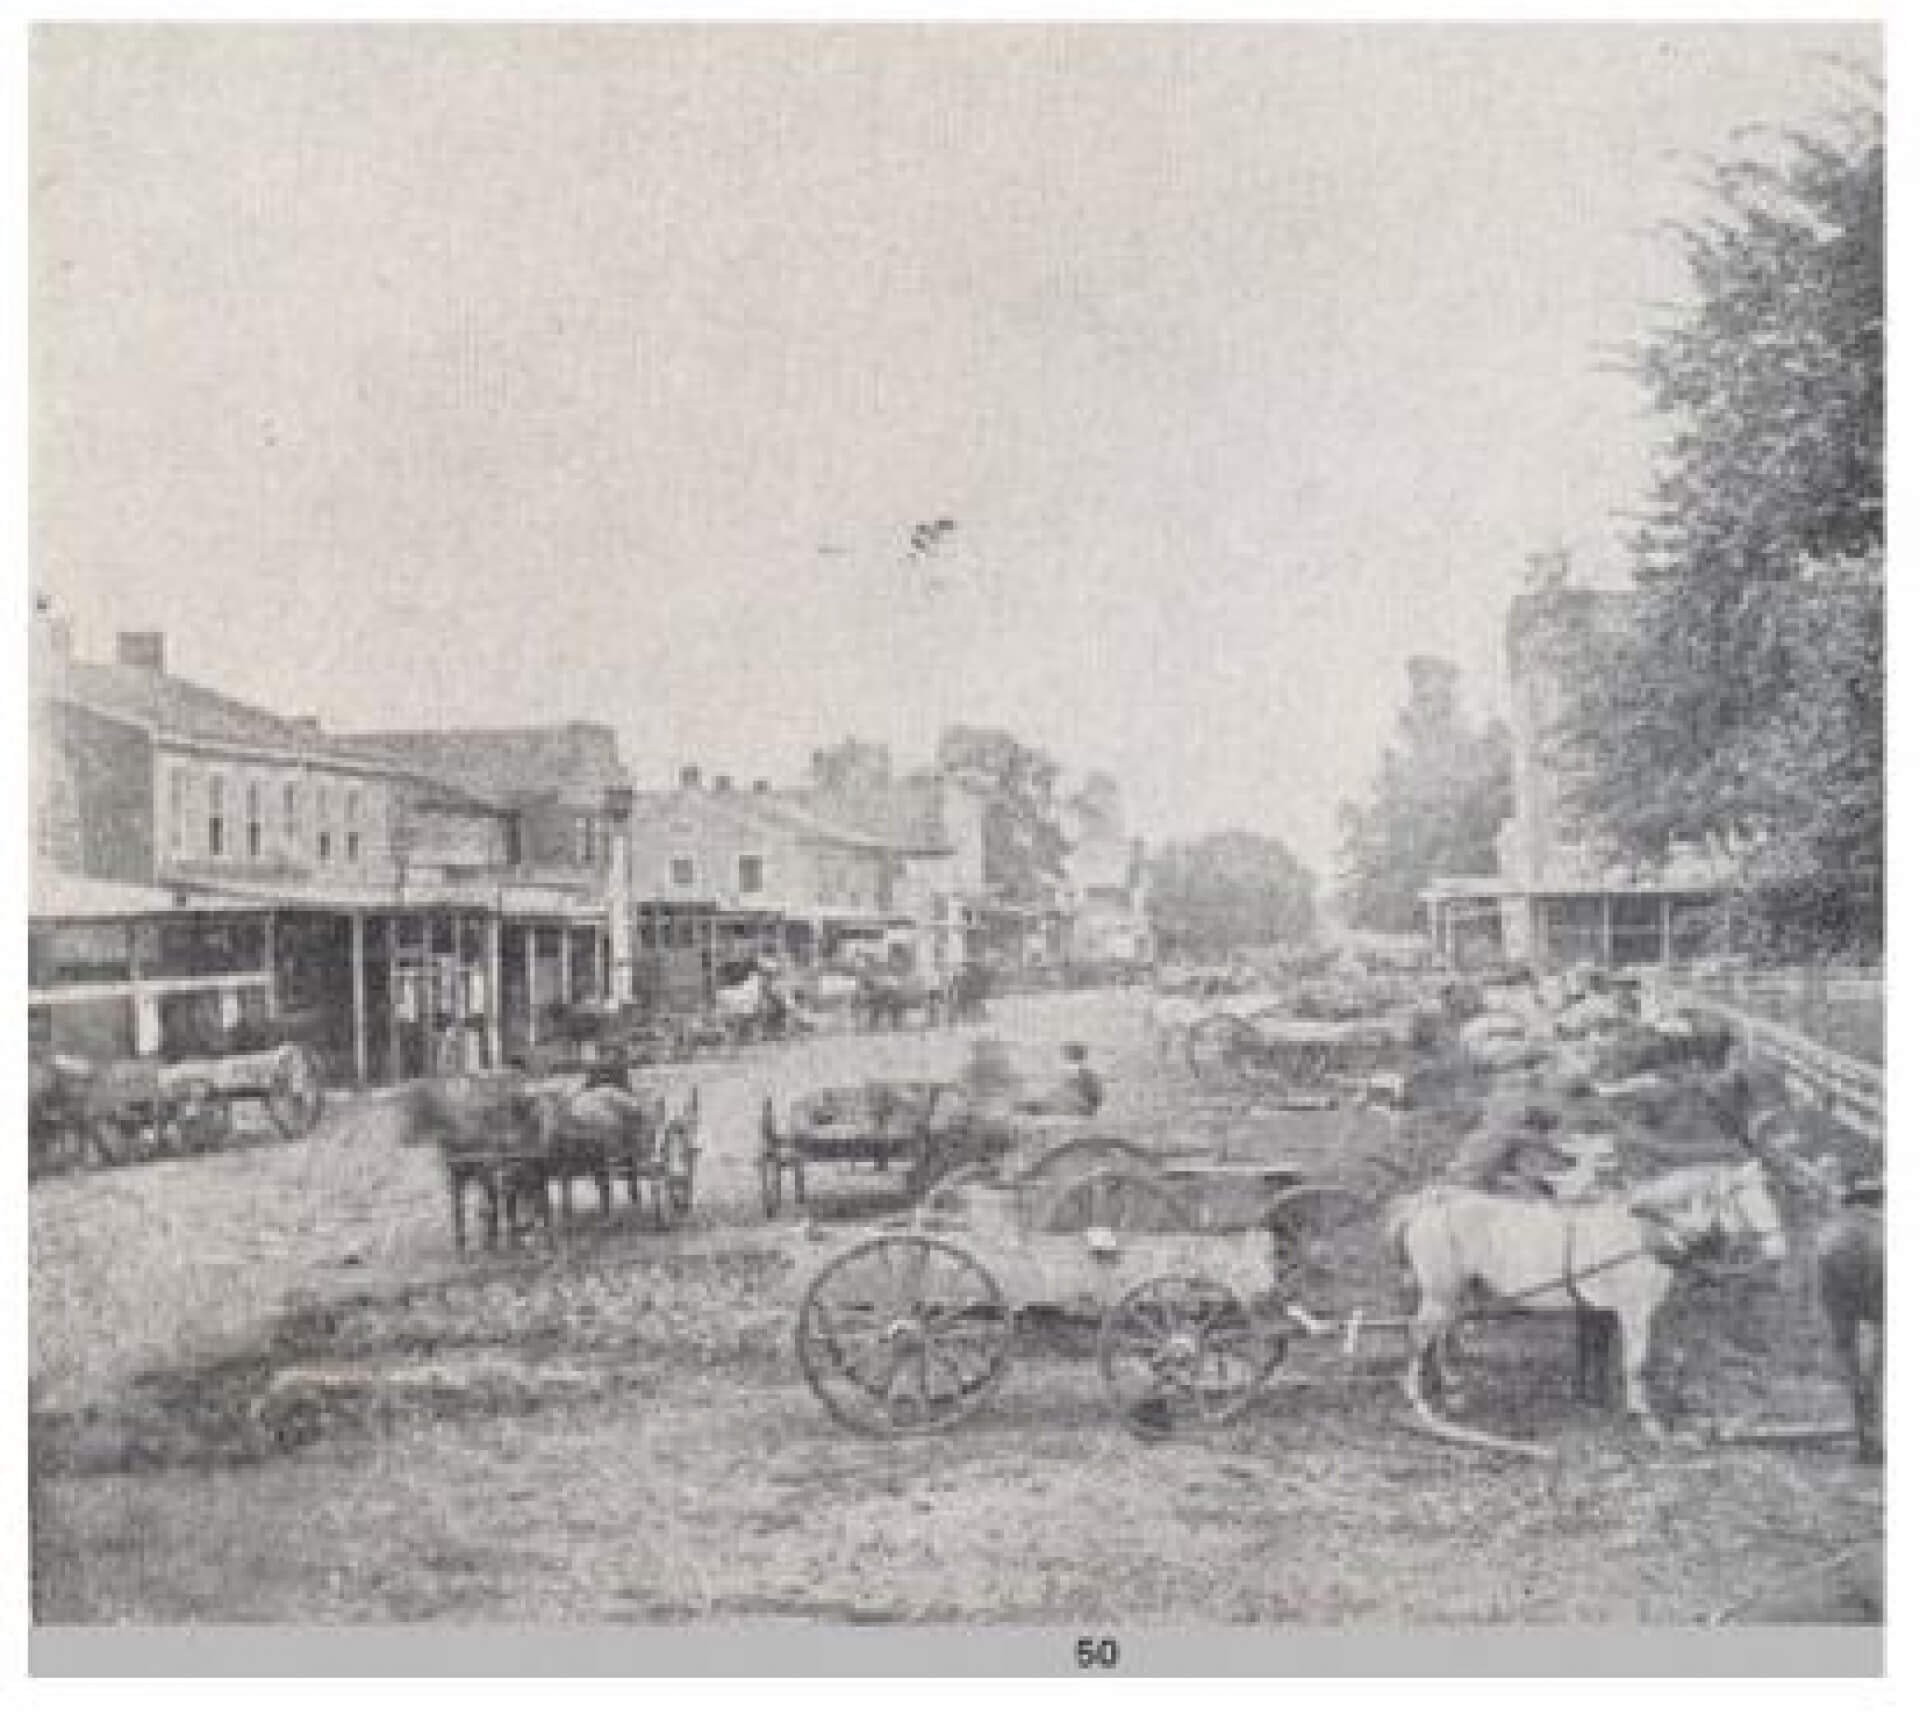 1864 picture of Market Street in Oskaloosa, Iowa.